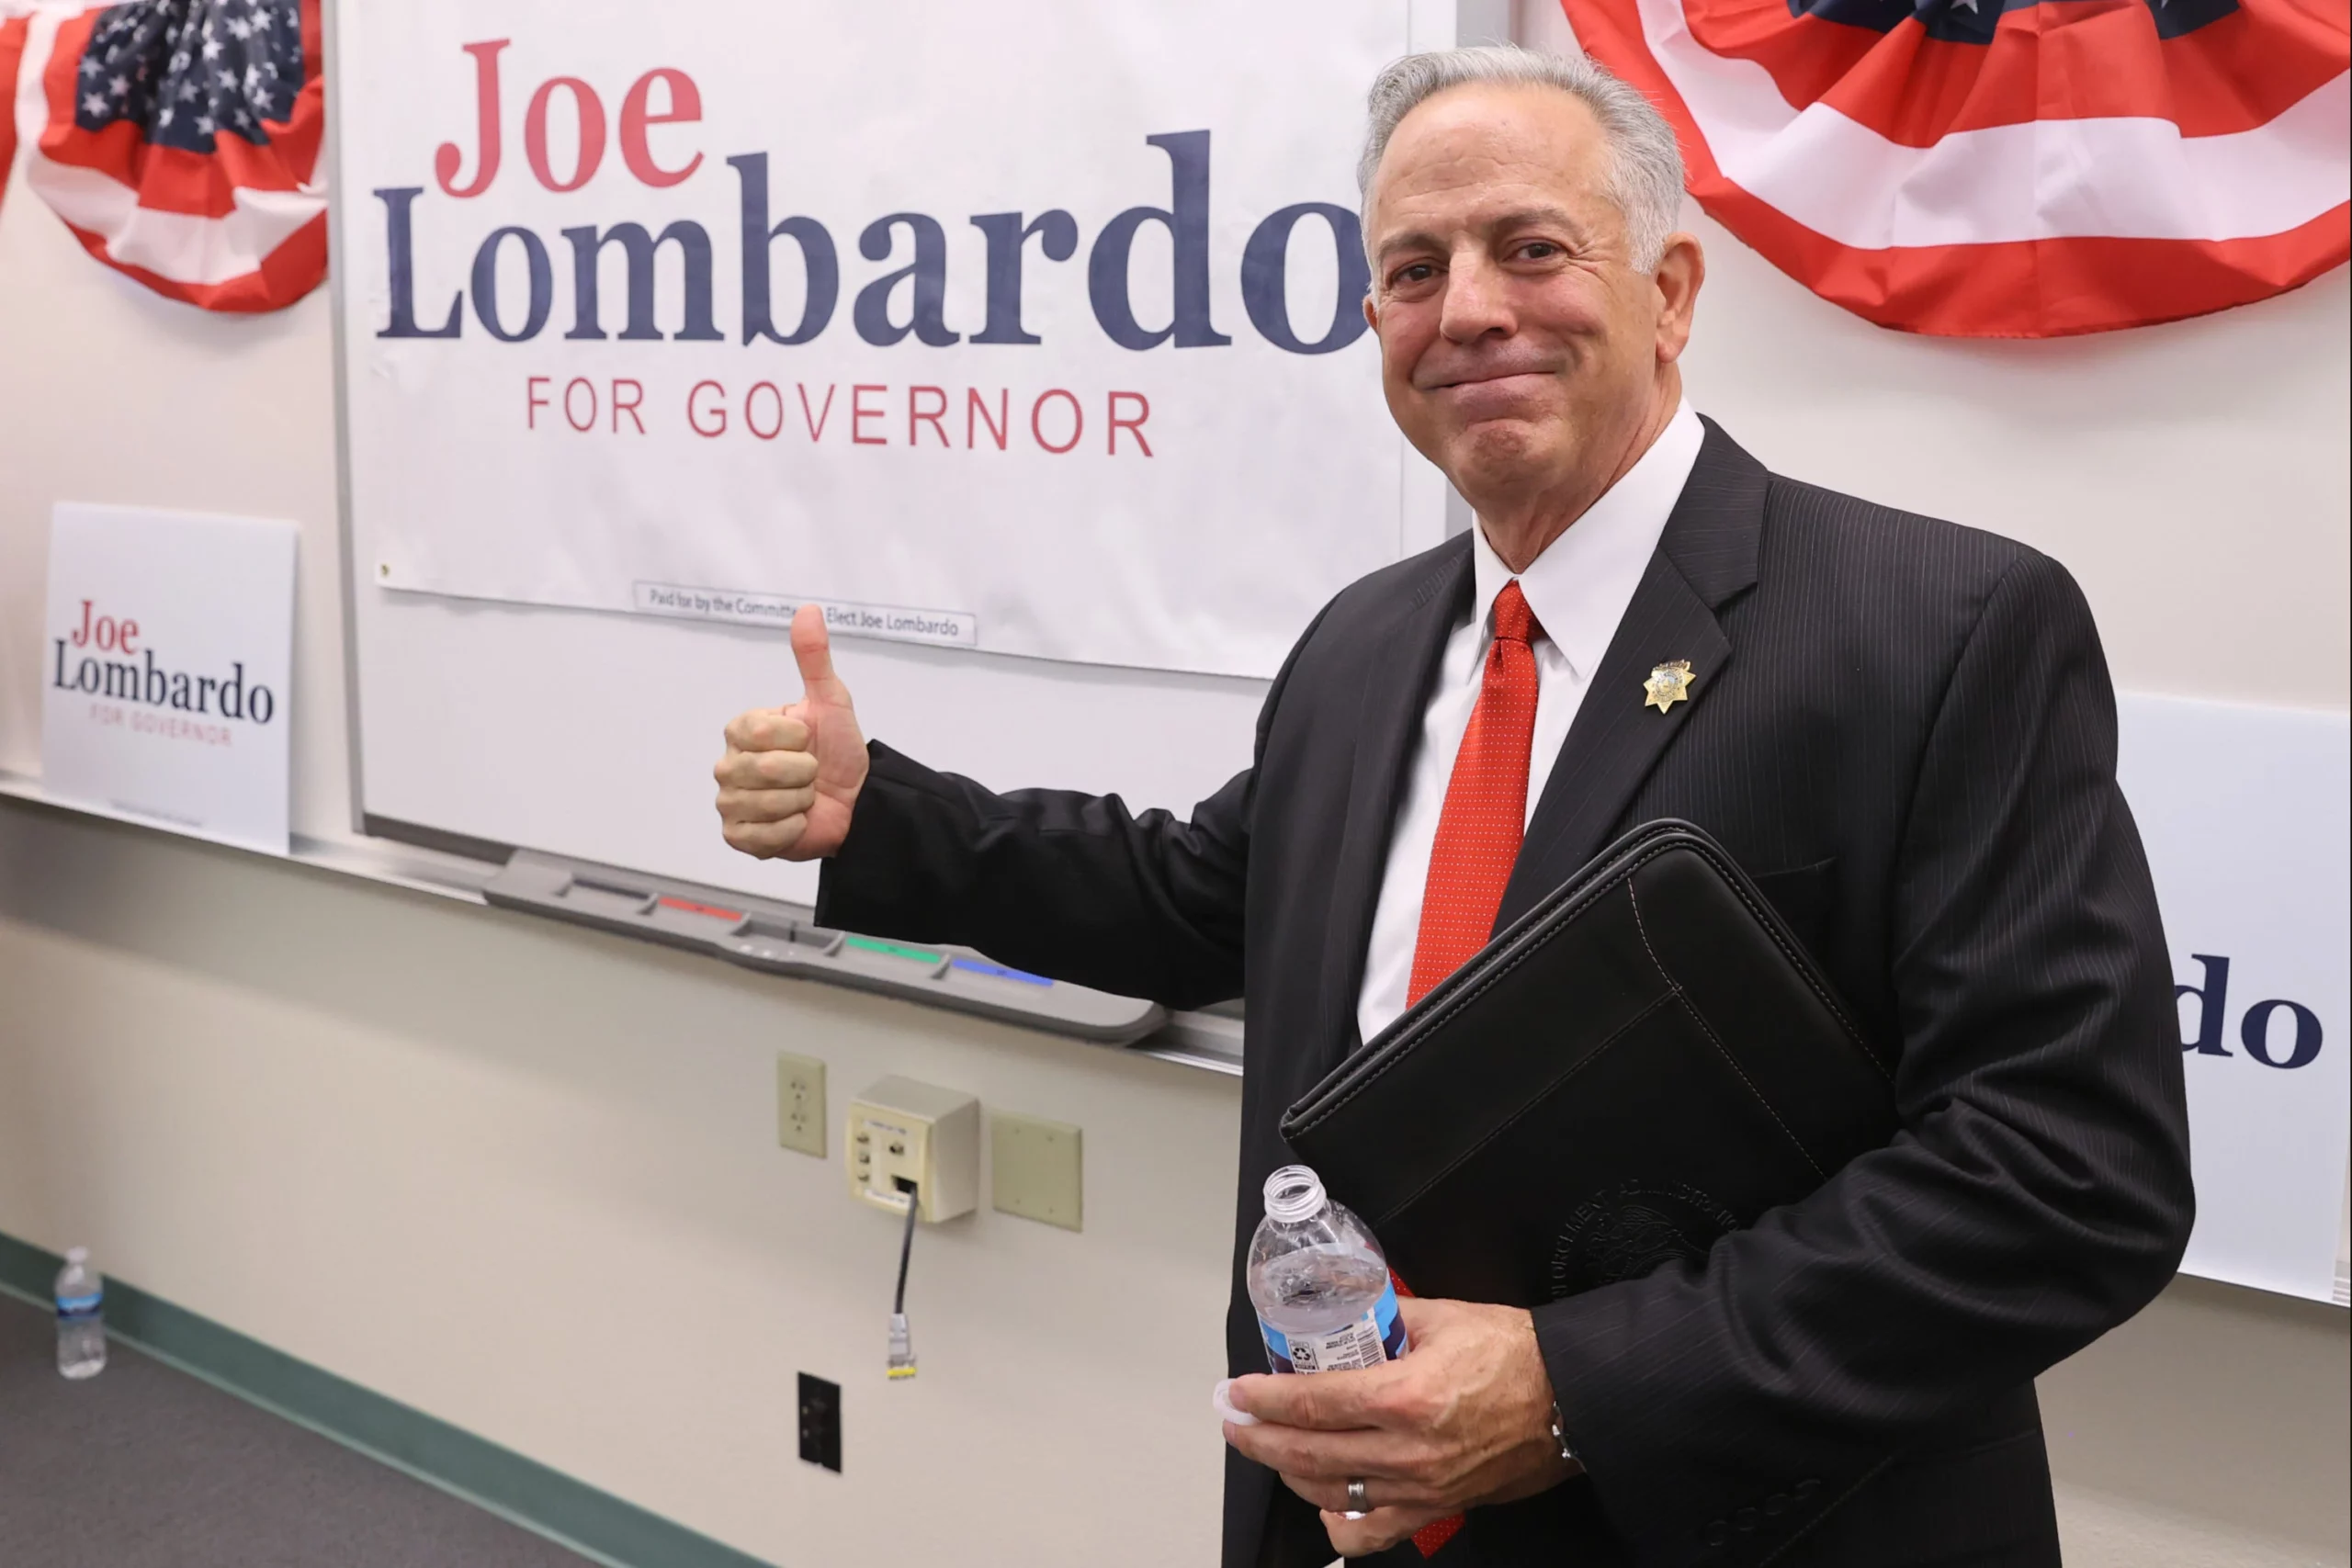 Joe Lombardo for governor